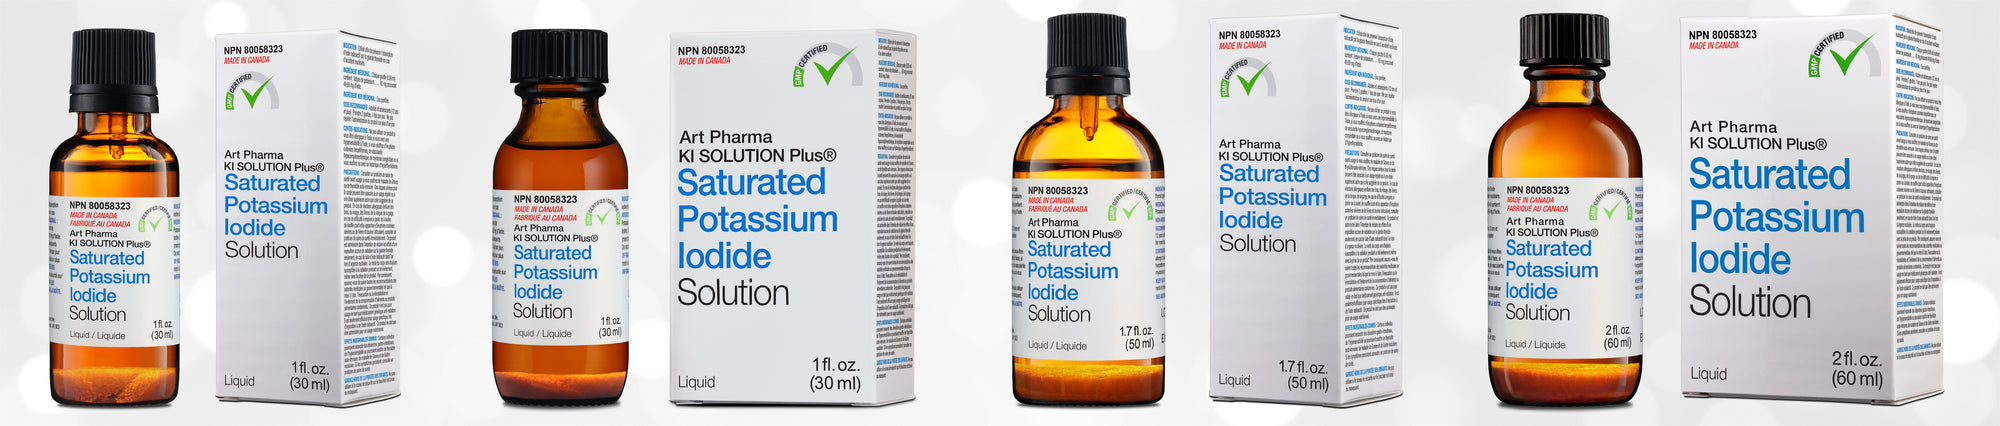 Art Pharma KI Solution Plus Saturated Solution of Potassium Iodide